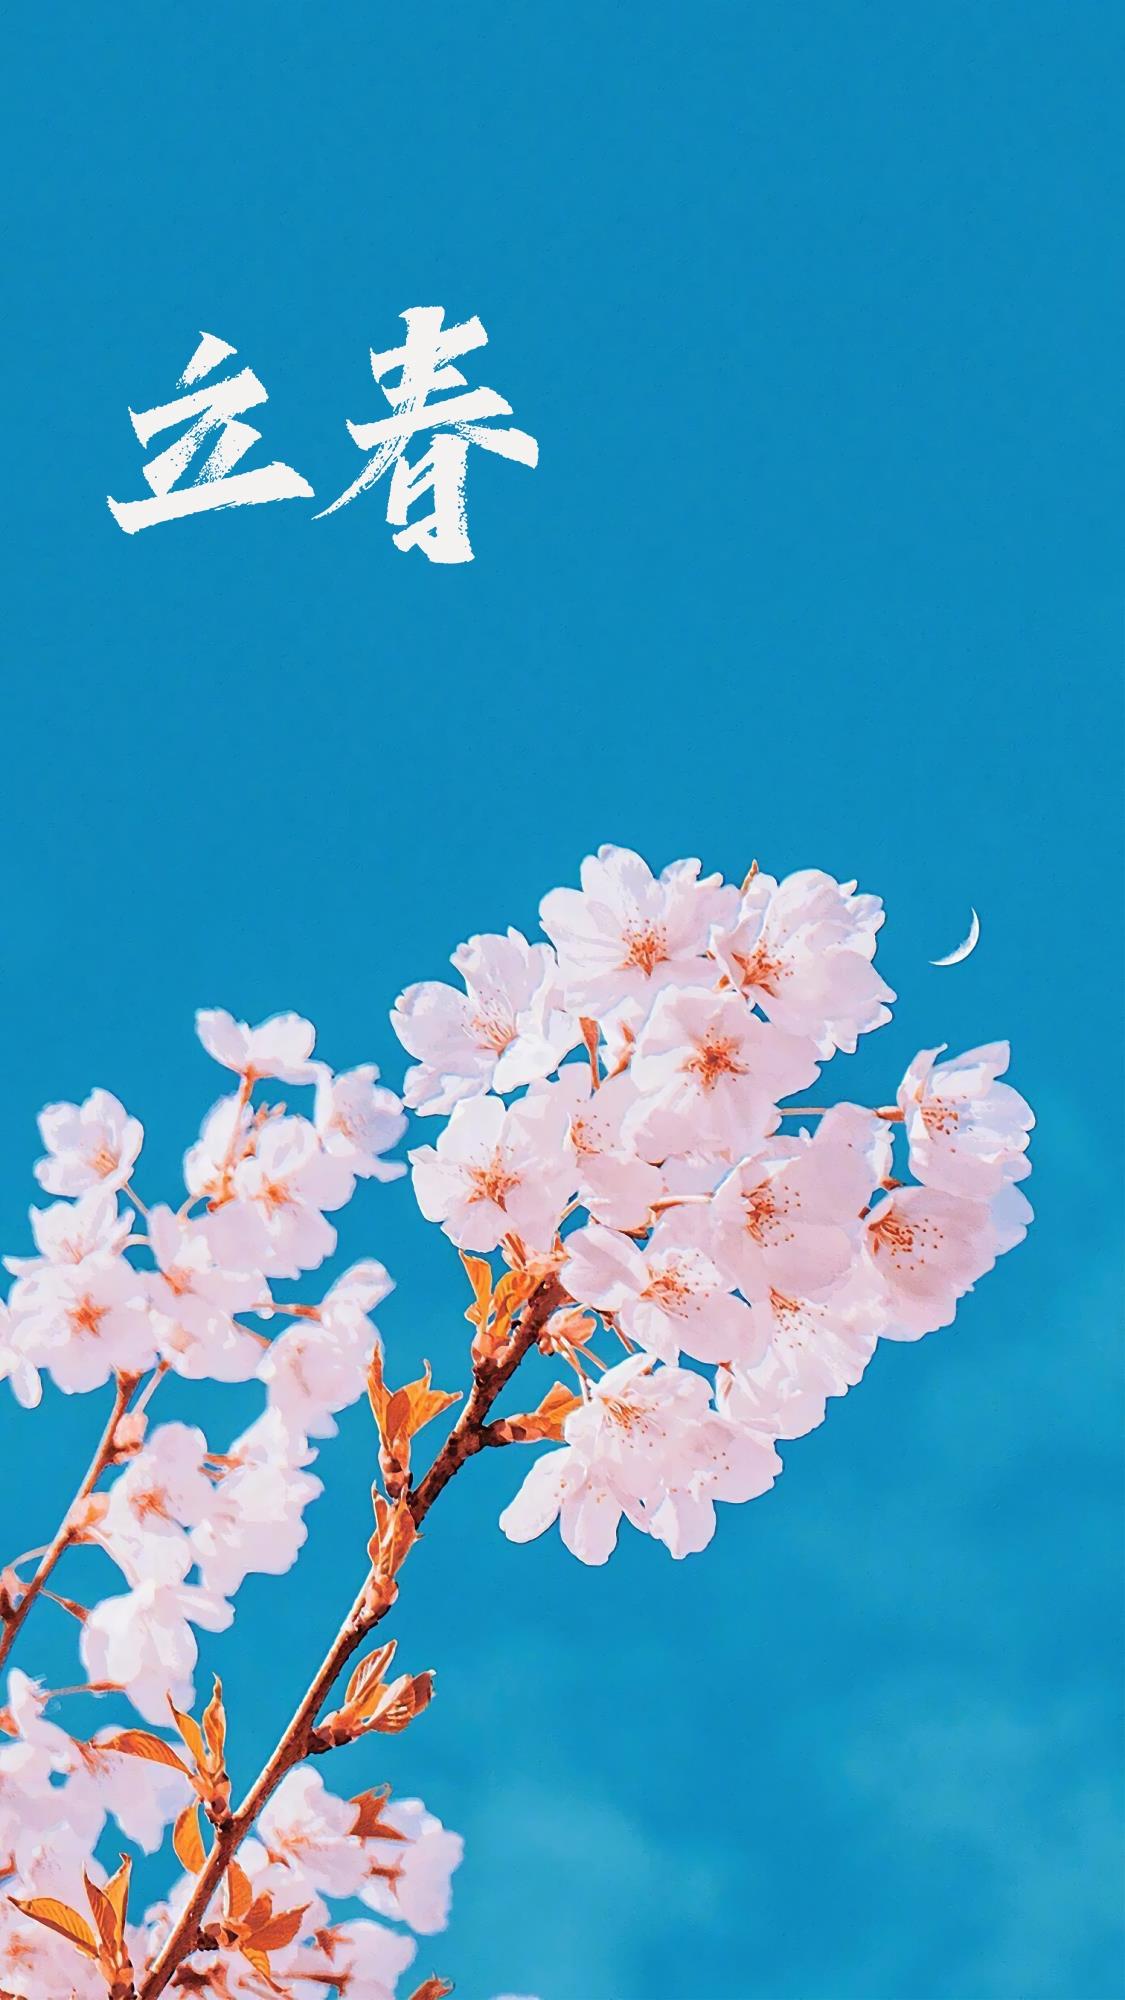 立春时节之花朵手机壁纸图片